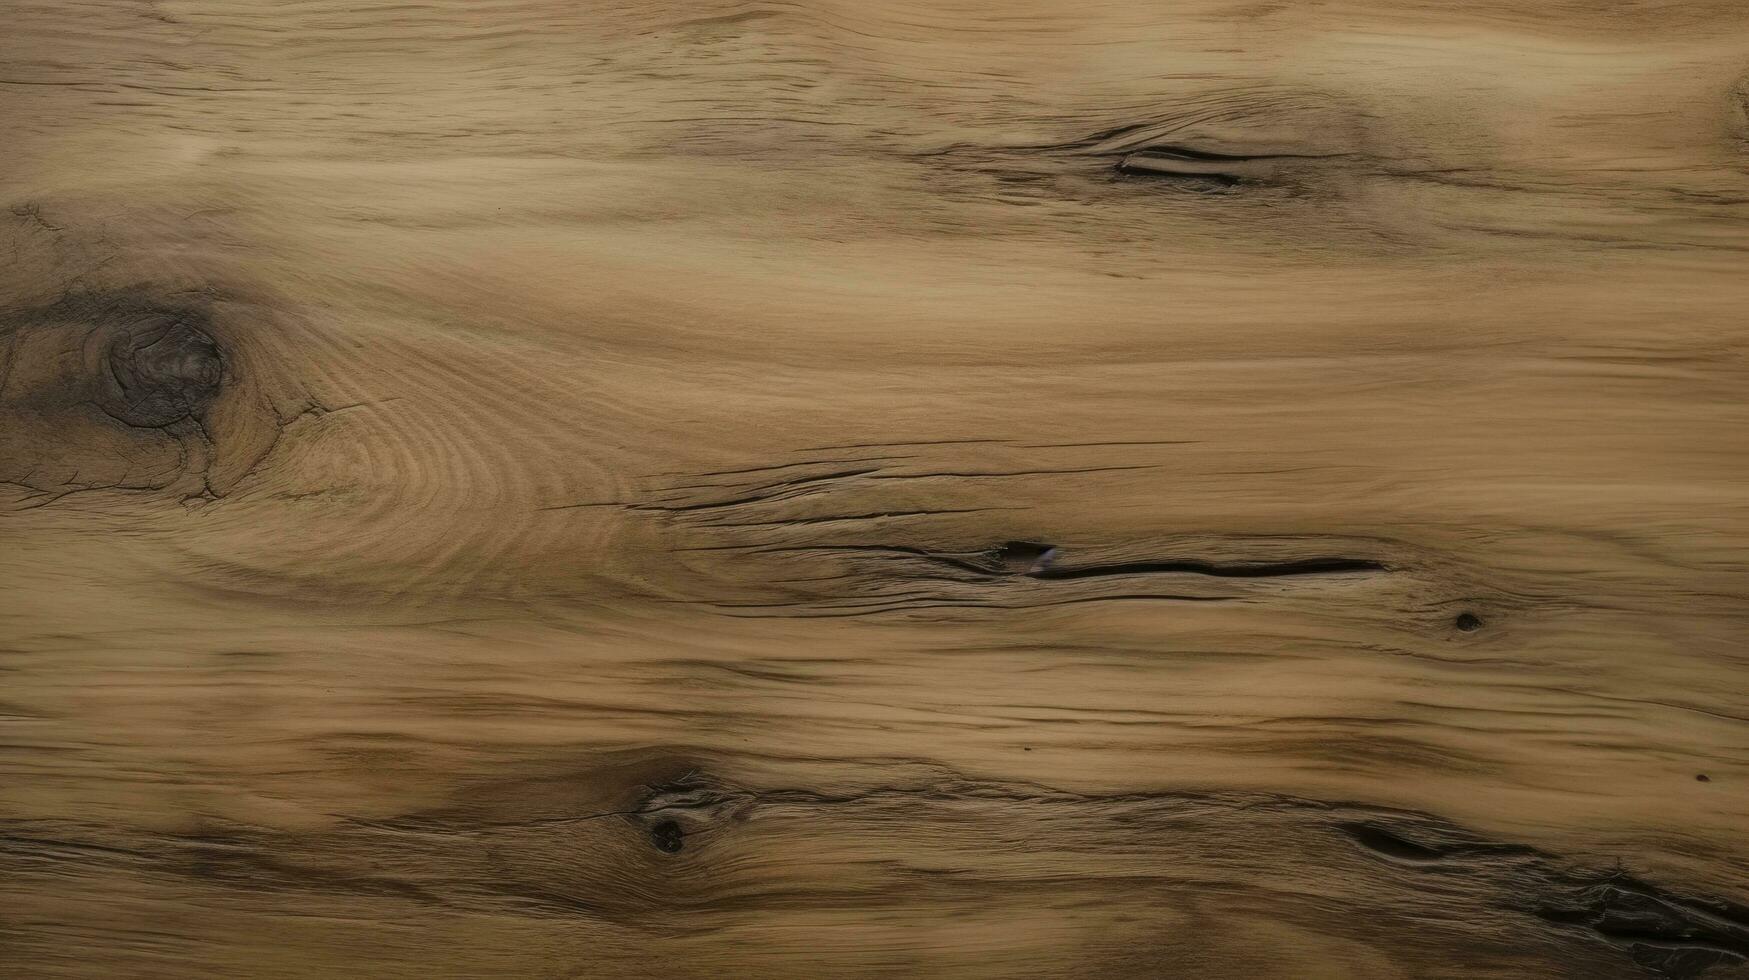 marrón de madera fondo, madera chapa para muebles, textura de cerámico loseta en de madera piso estilo, pino madera Clásico madera textura fondo, generar ai foto